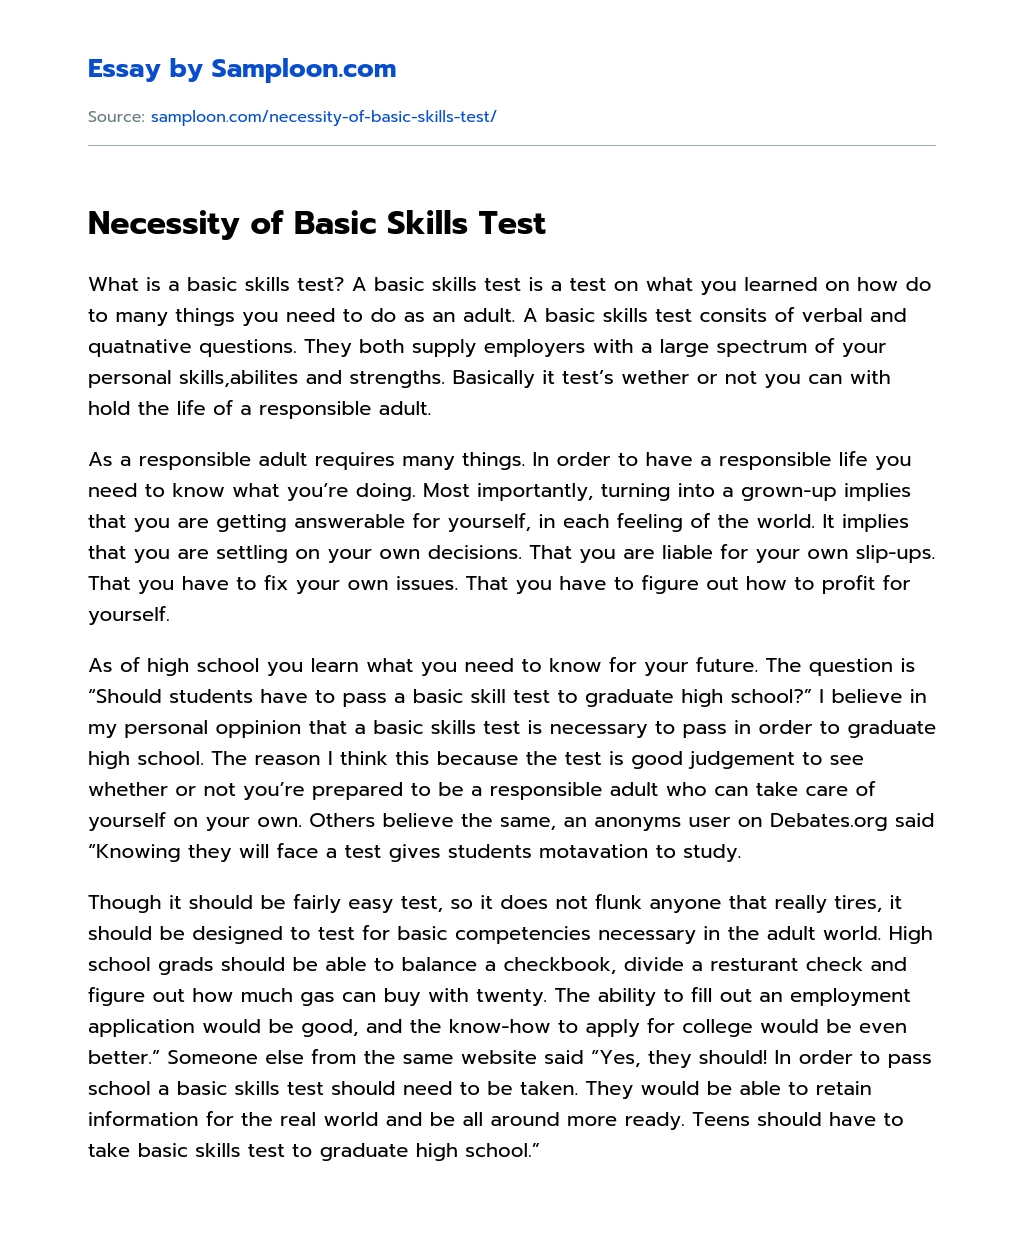 Necessity of Basic Skills Test essay